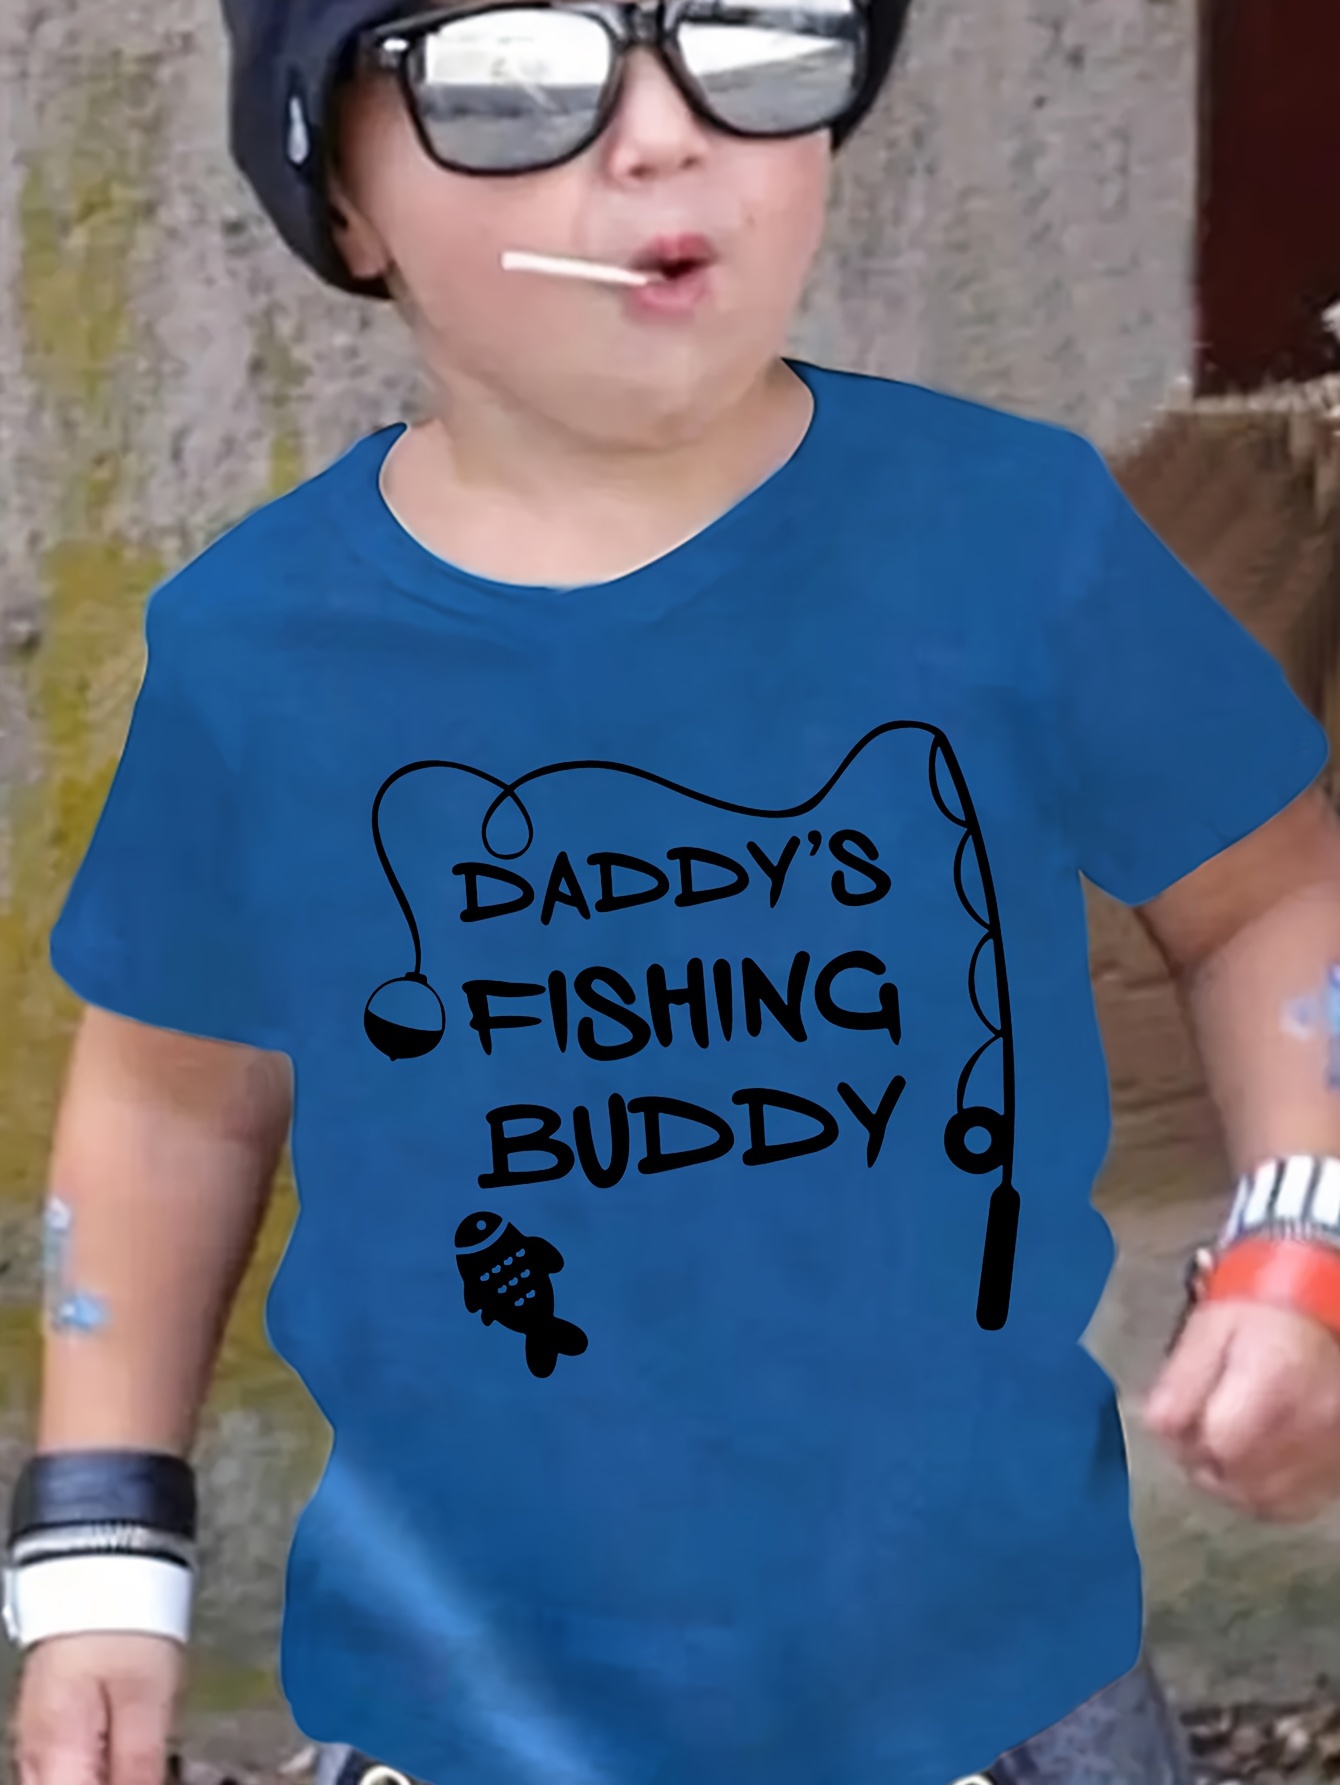 Toddler Baby Girls bows Bobbers Print T shirt Fishing Lure